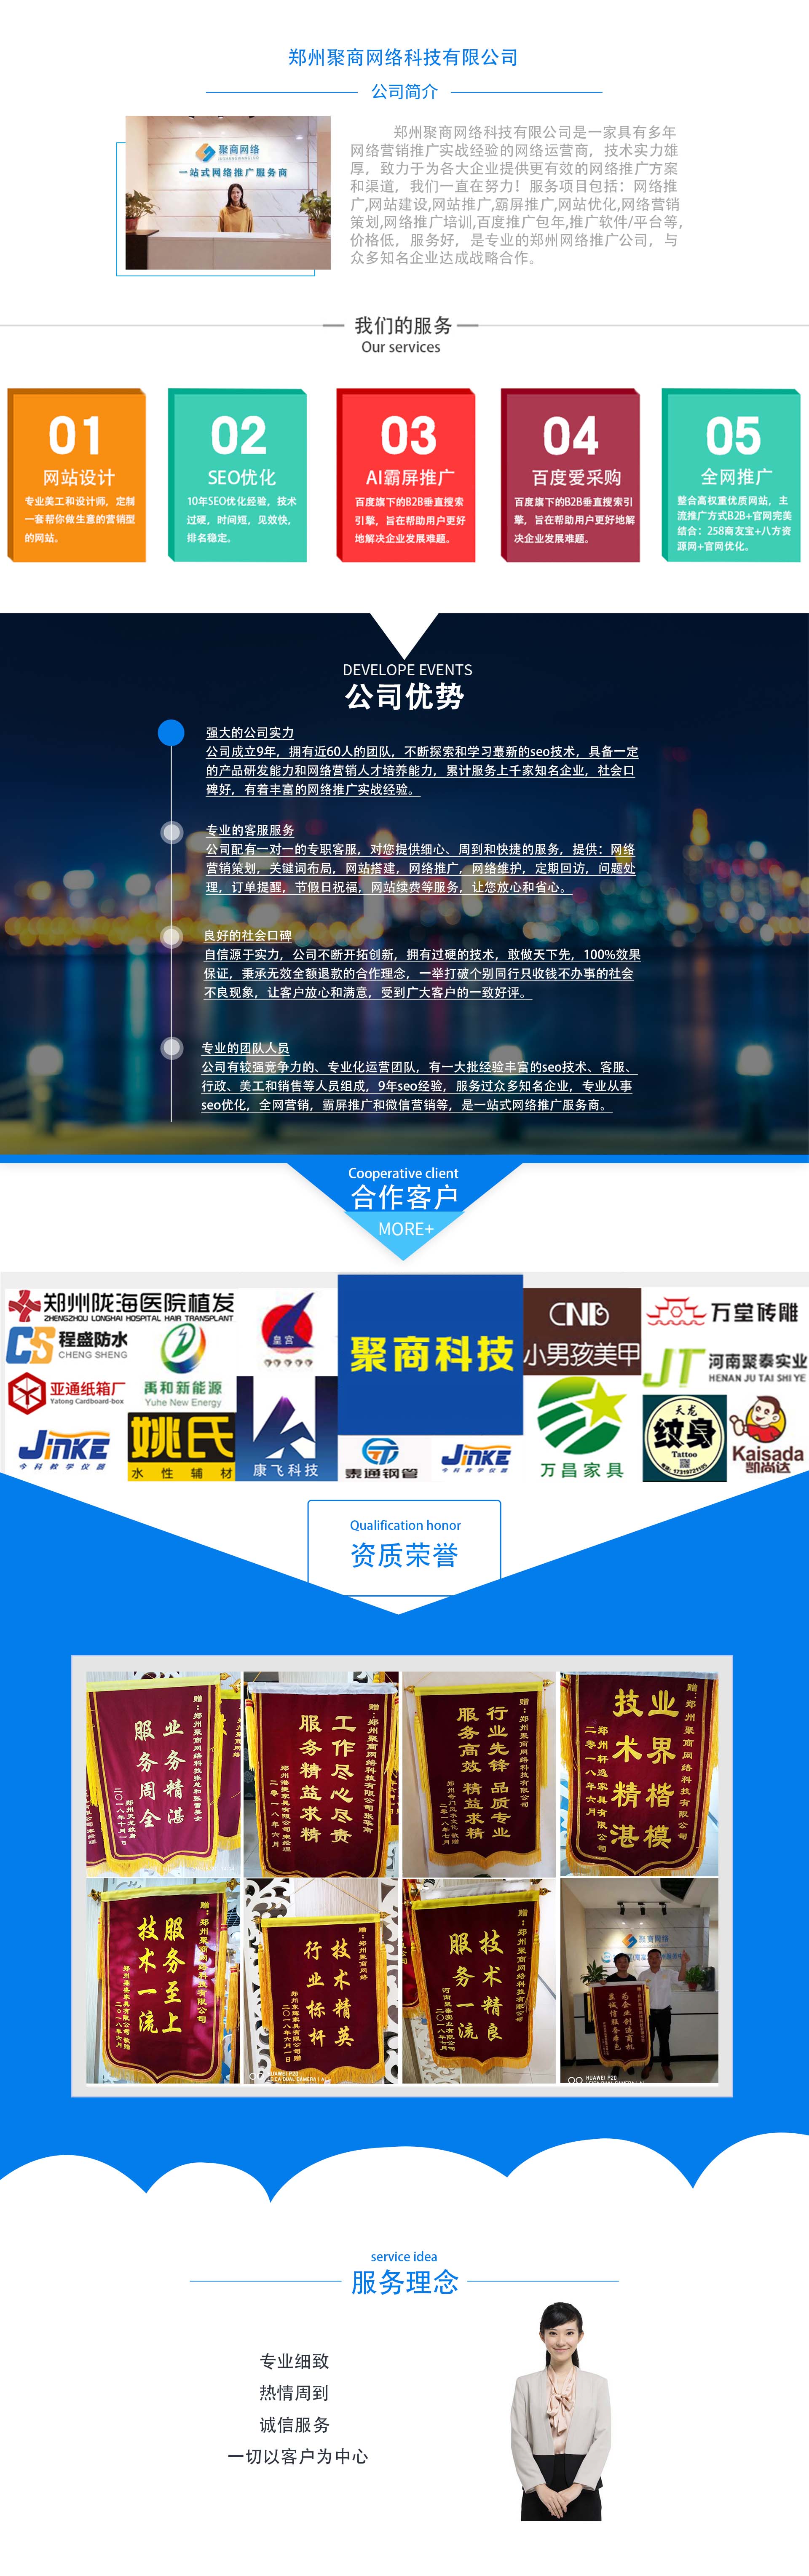 郑州企业网络推广外包公司